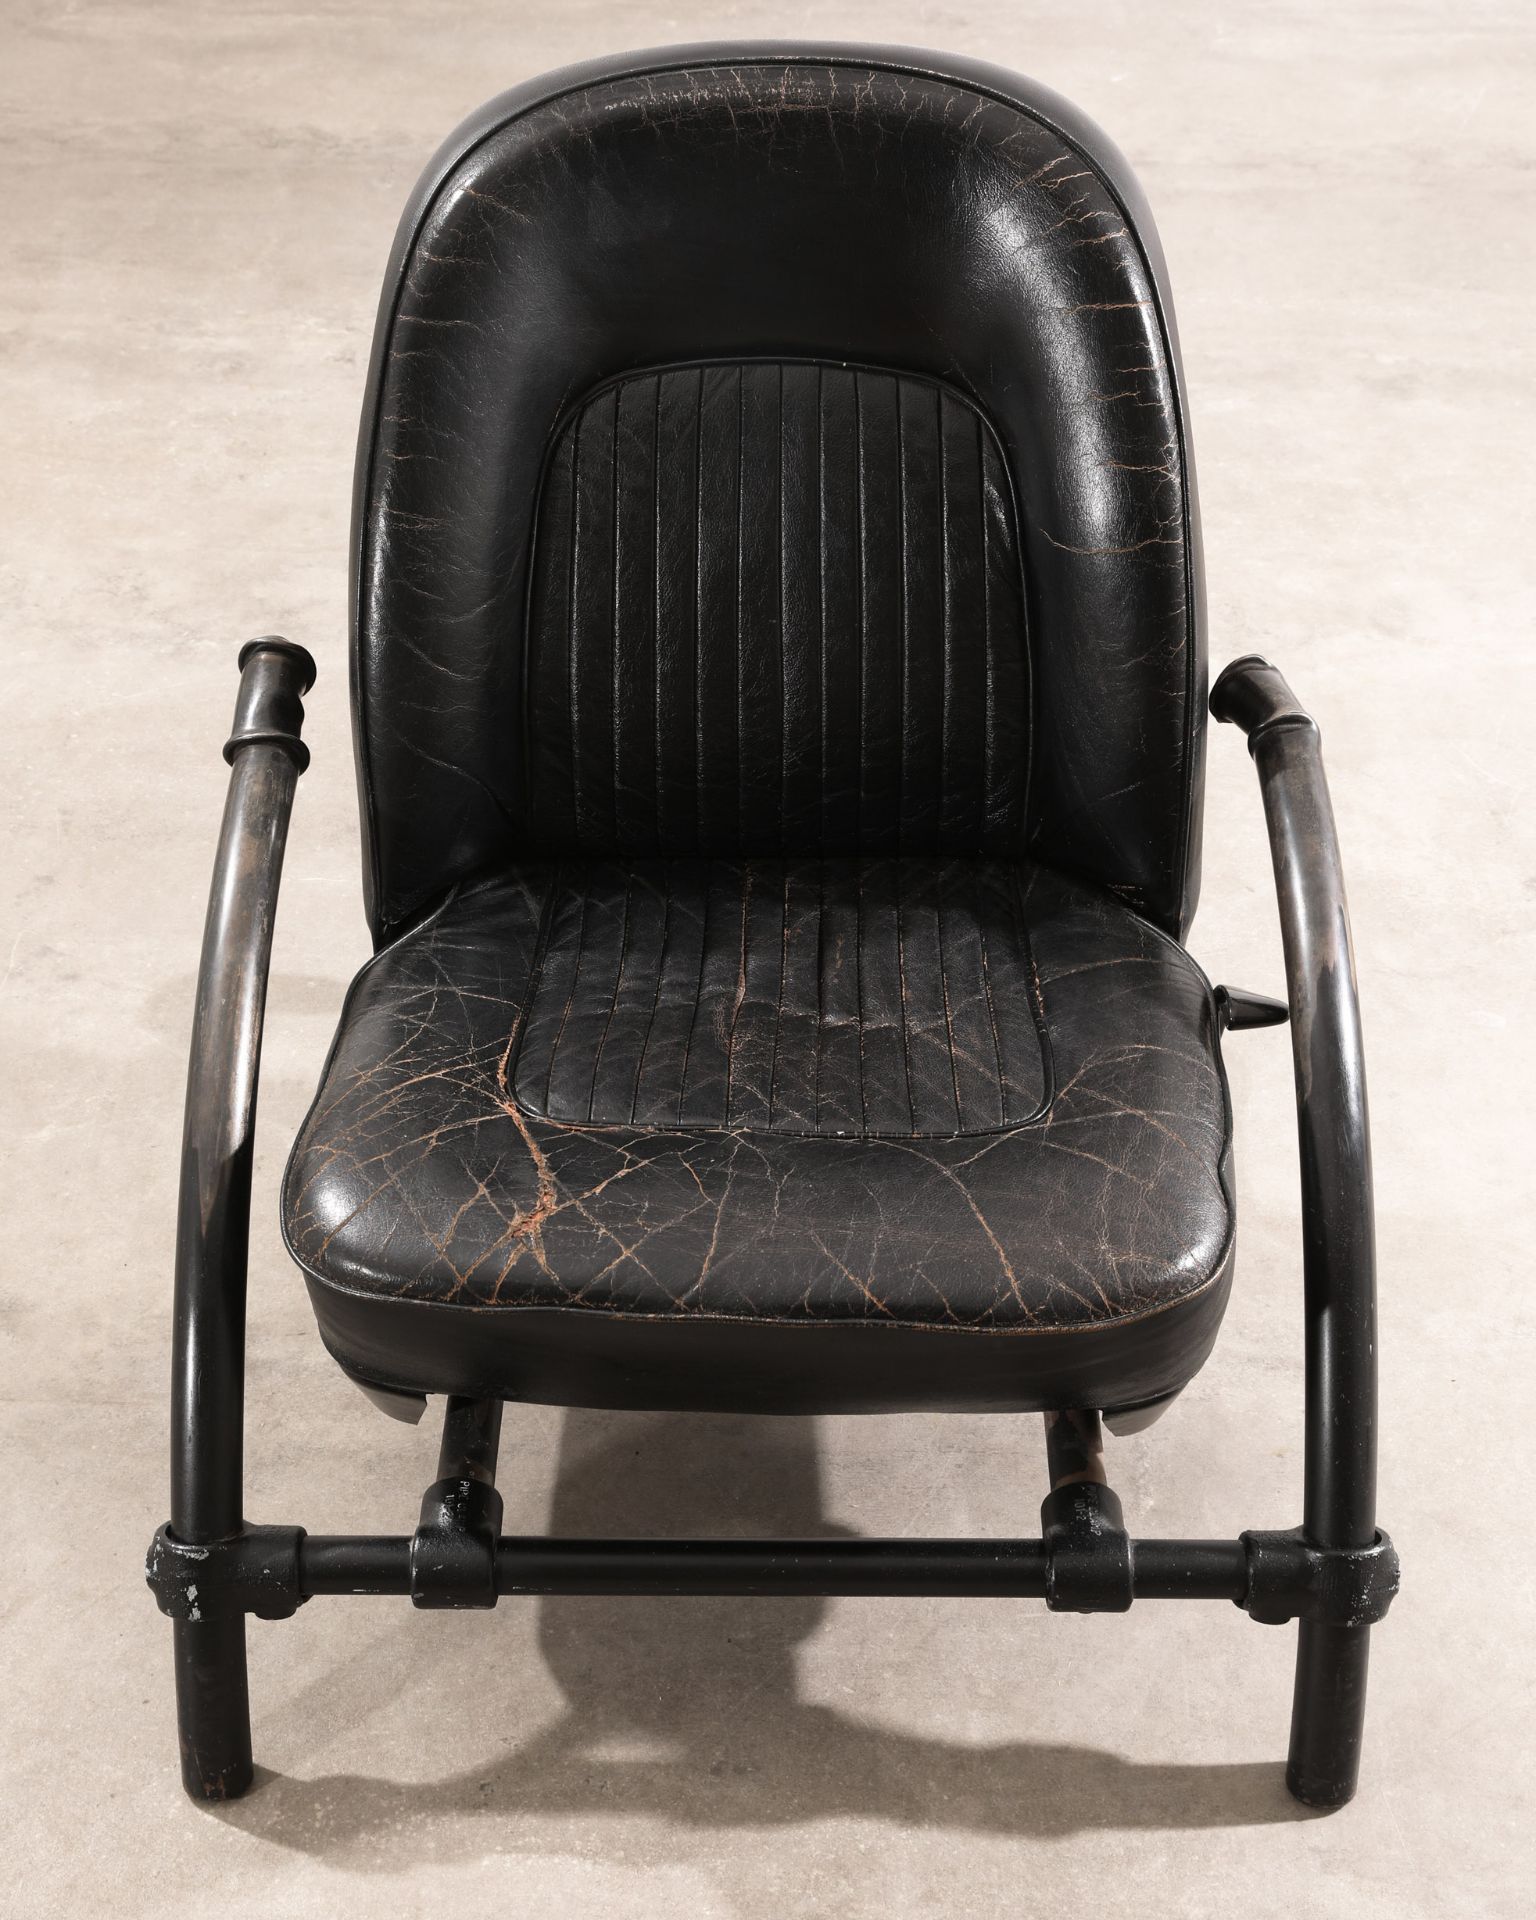 Ron Arad, One Off, signierter Prototyp / frühe Entwicklungsstufe des Rover Chair - Bild 2 aus 5